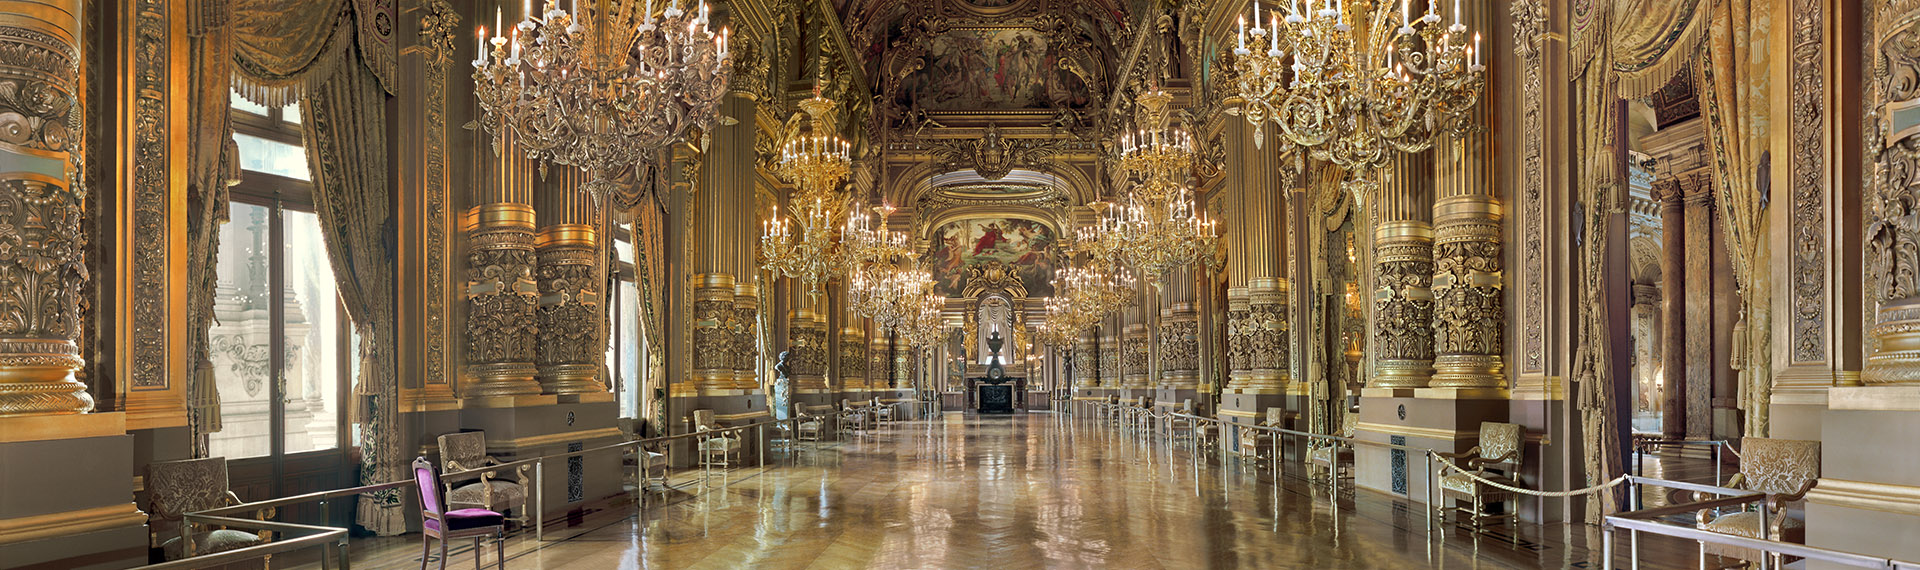 Un panorama du Grand Foyer du palais Garnier.